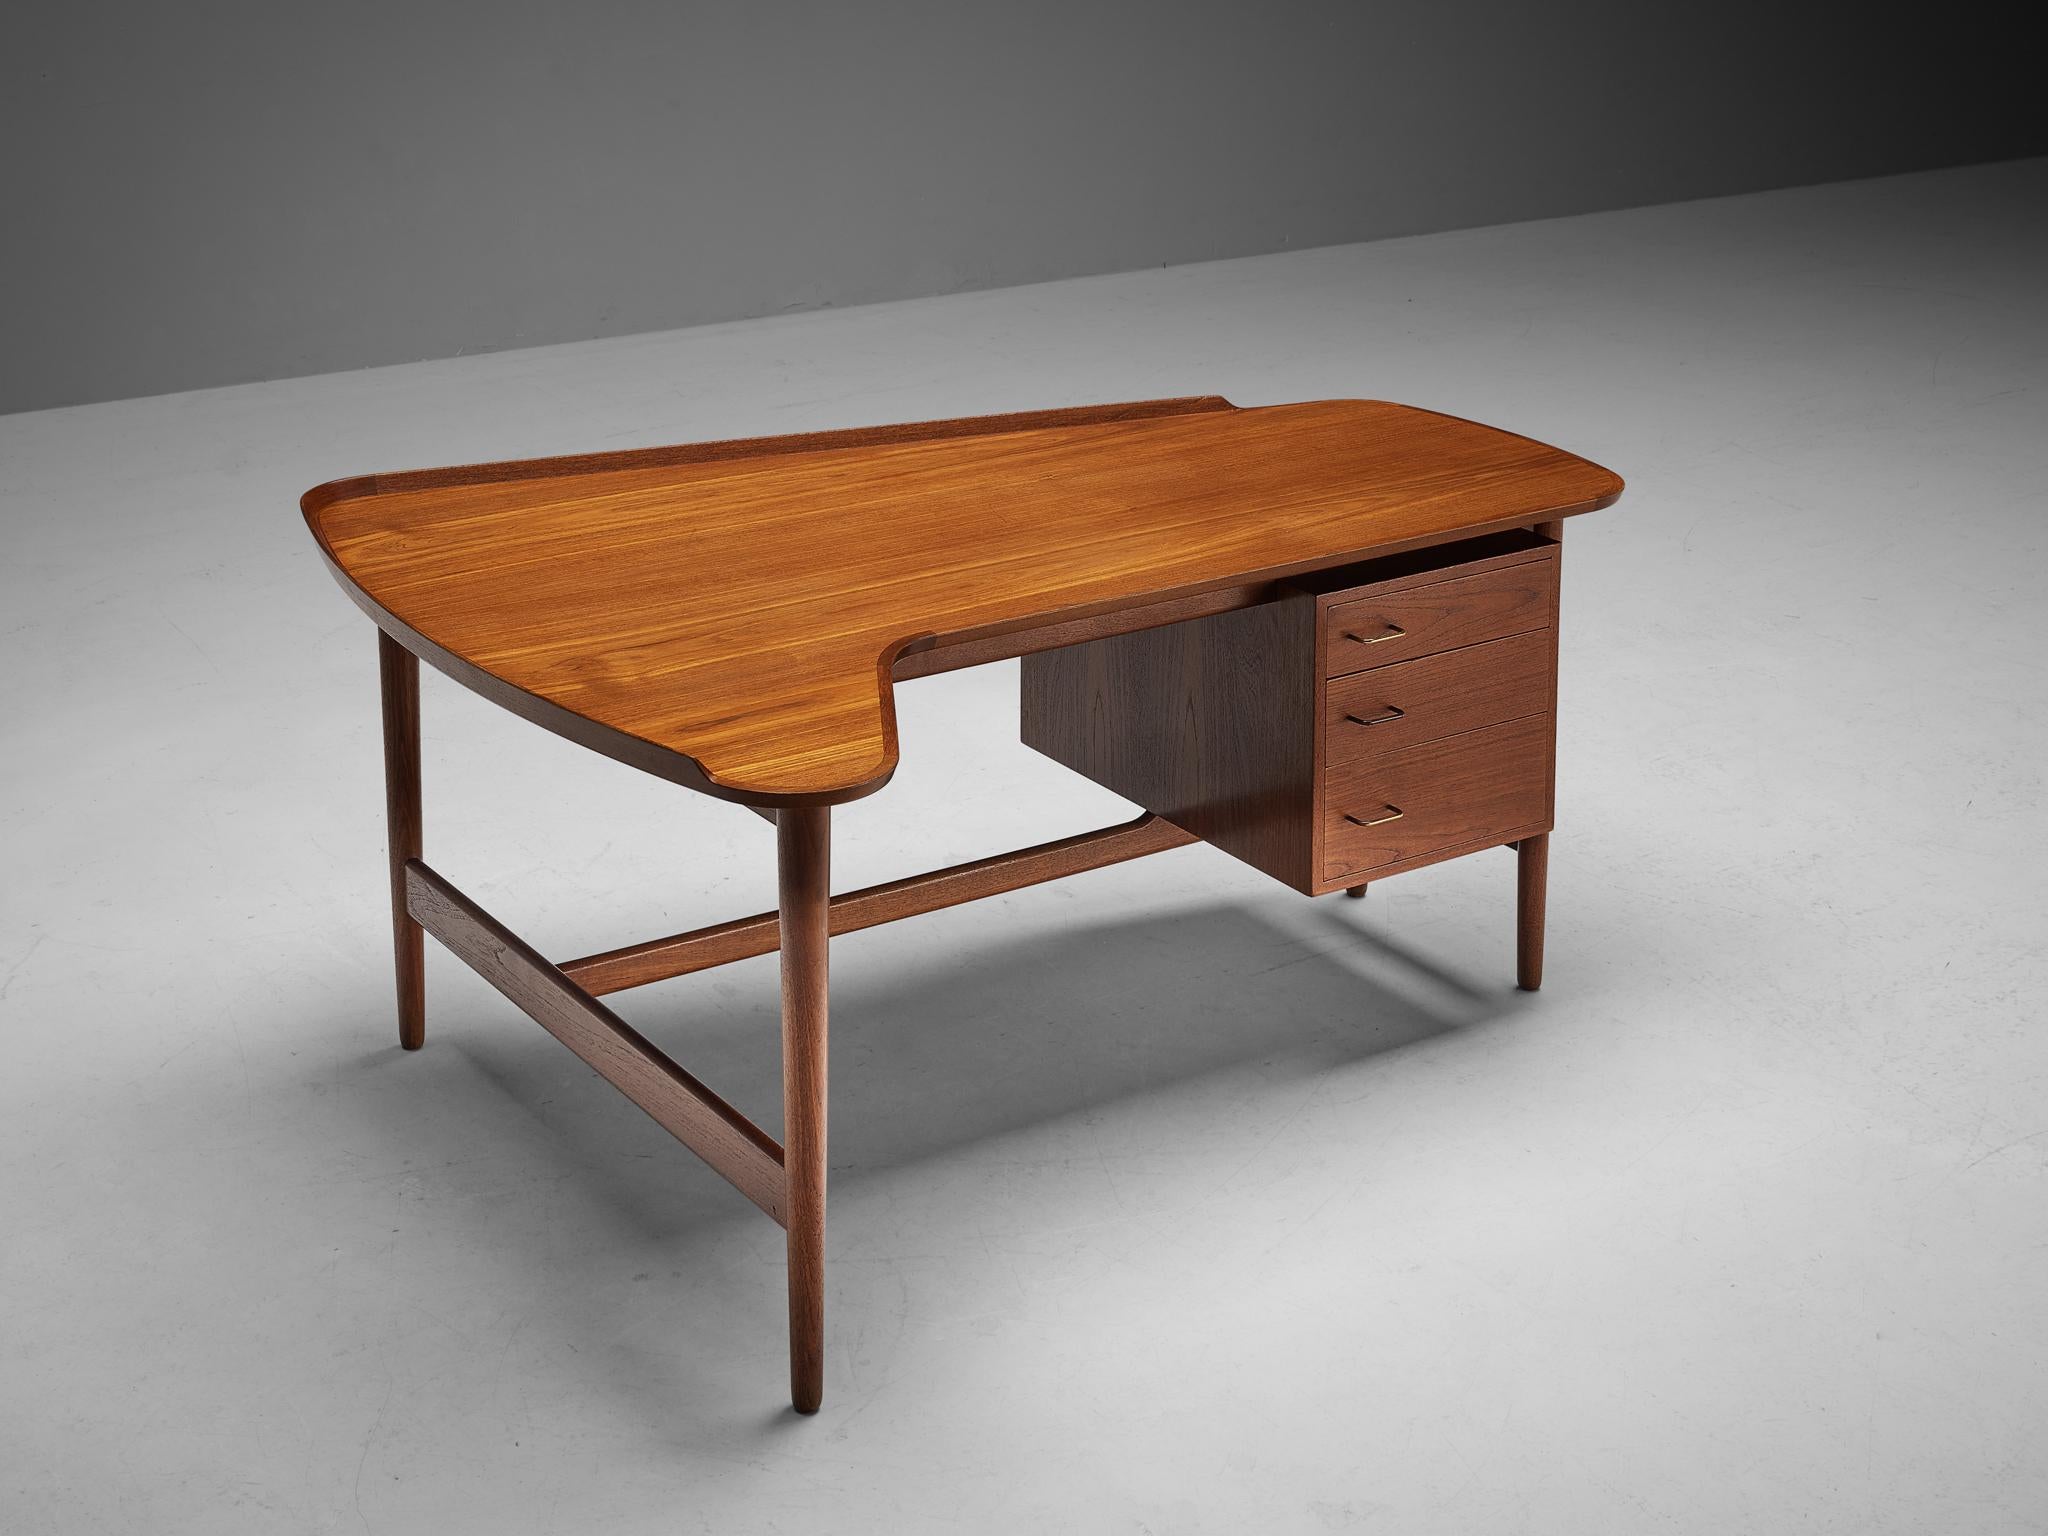 Arne Vodder pour Bovirke, bureau 'modèle BO85', teck, laiton, Danemark, années 1950

Ce bureau en teck a été conçu par Arne Vodder pour Bovirke. La table est dotée d'un plateau de forme organique aux bords relevés. Un meuble angulaire avec trois